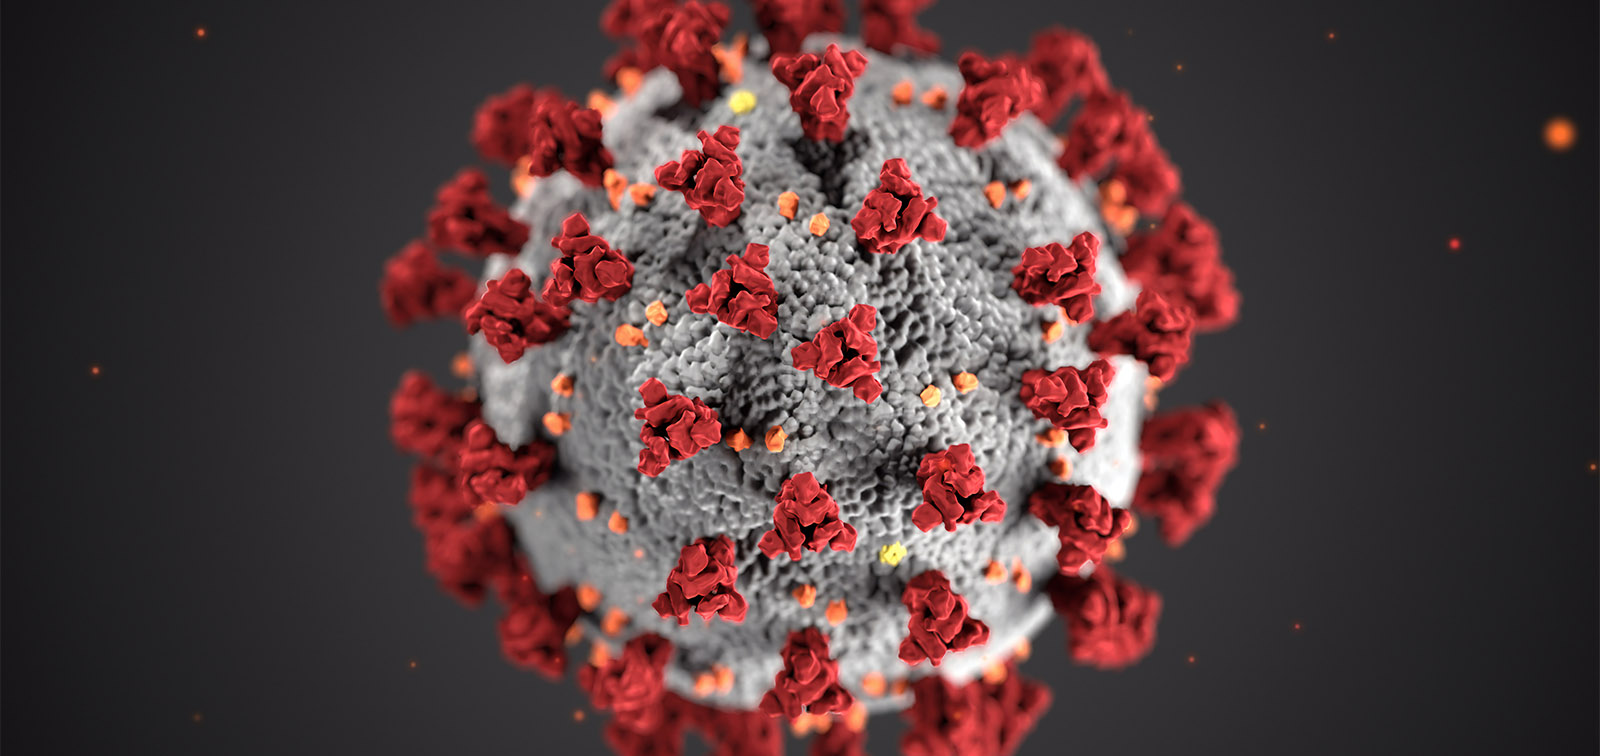 Investigadores analizan el origen del SARS-CoV-2 y otros coronavirus